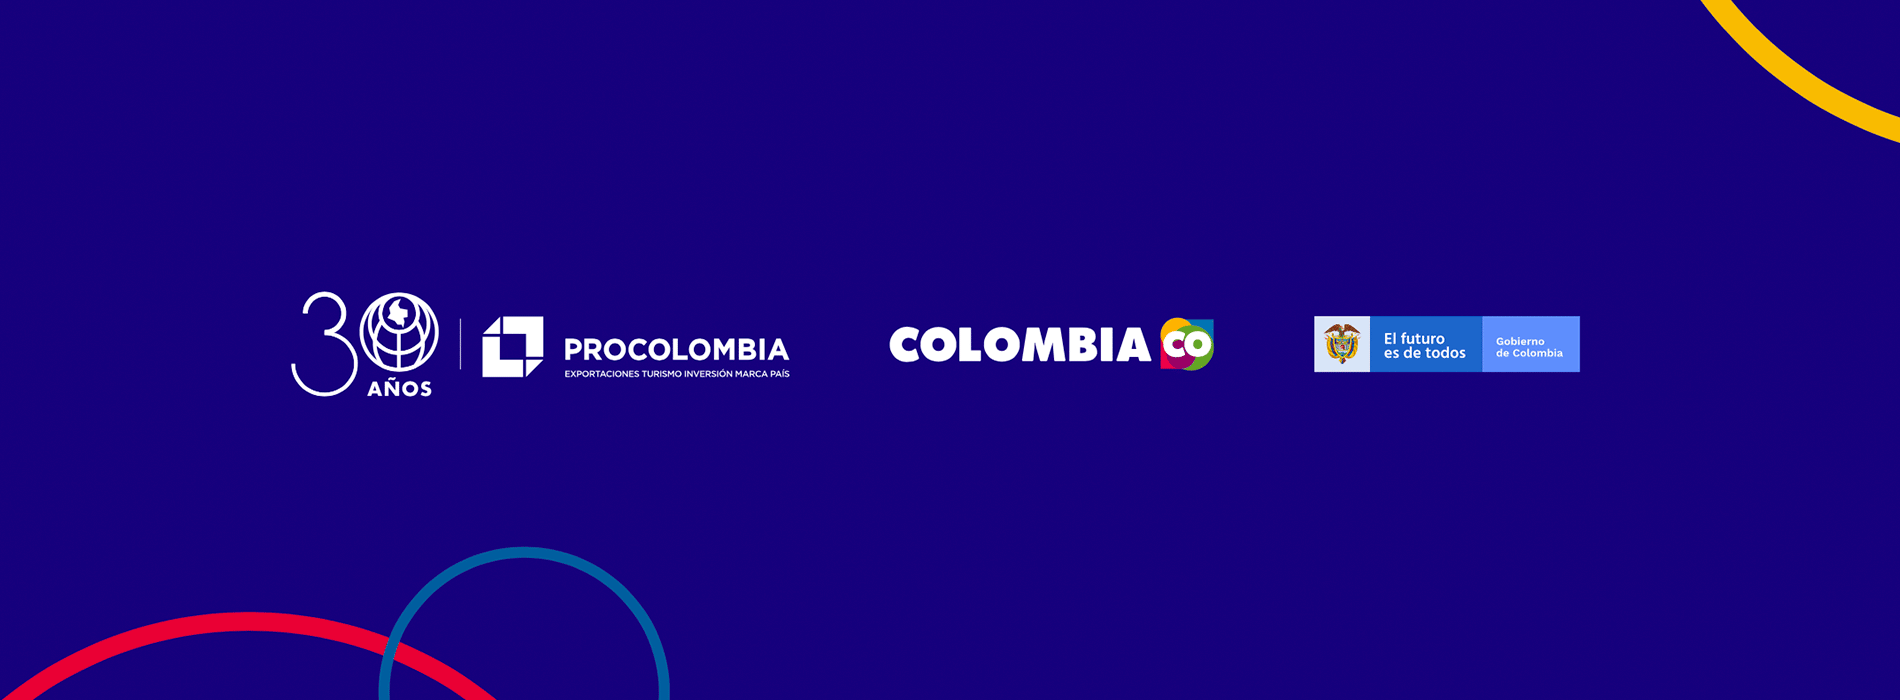 ProColombia cumple 30 años alcanzando grandes logros en exportaciones, inversión y turismo